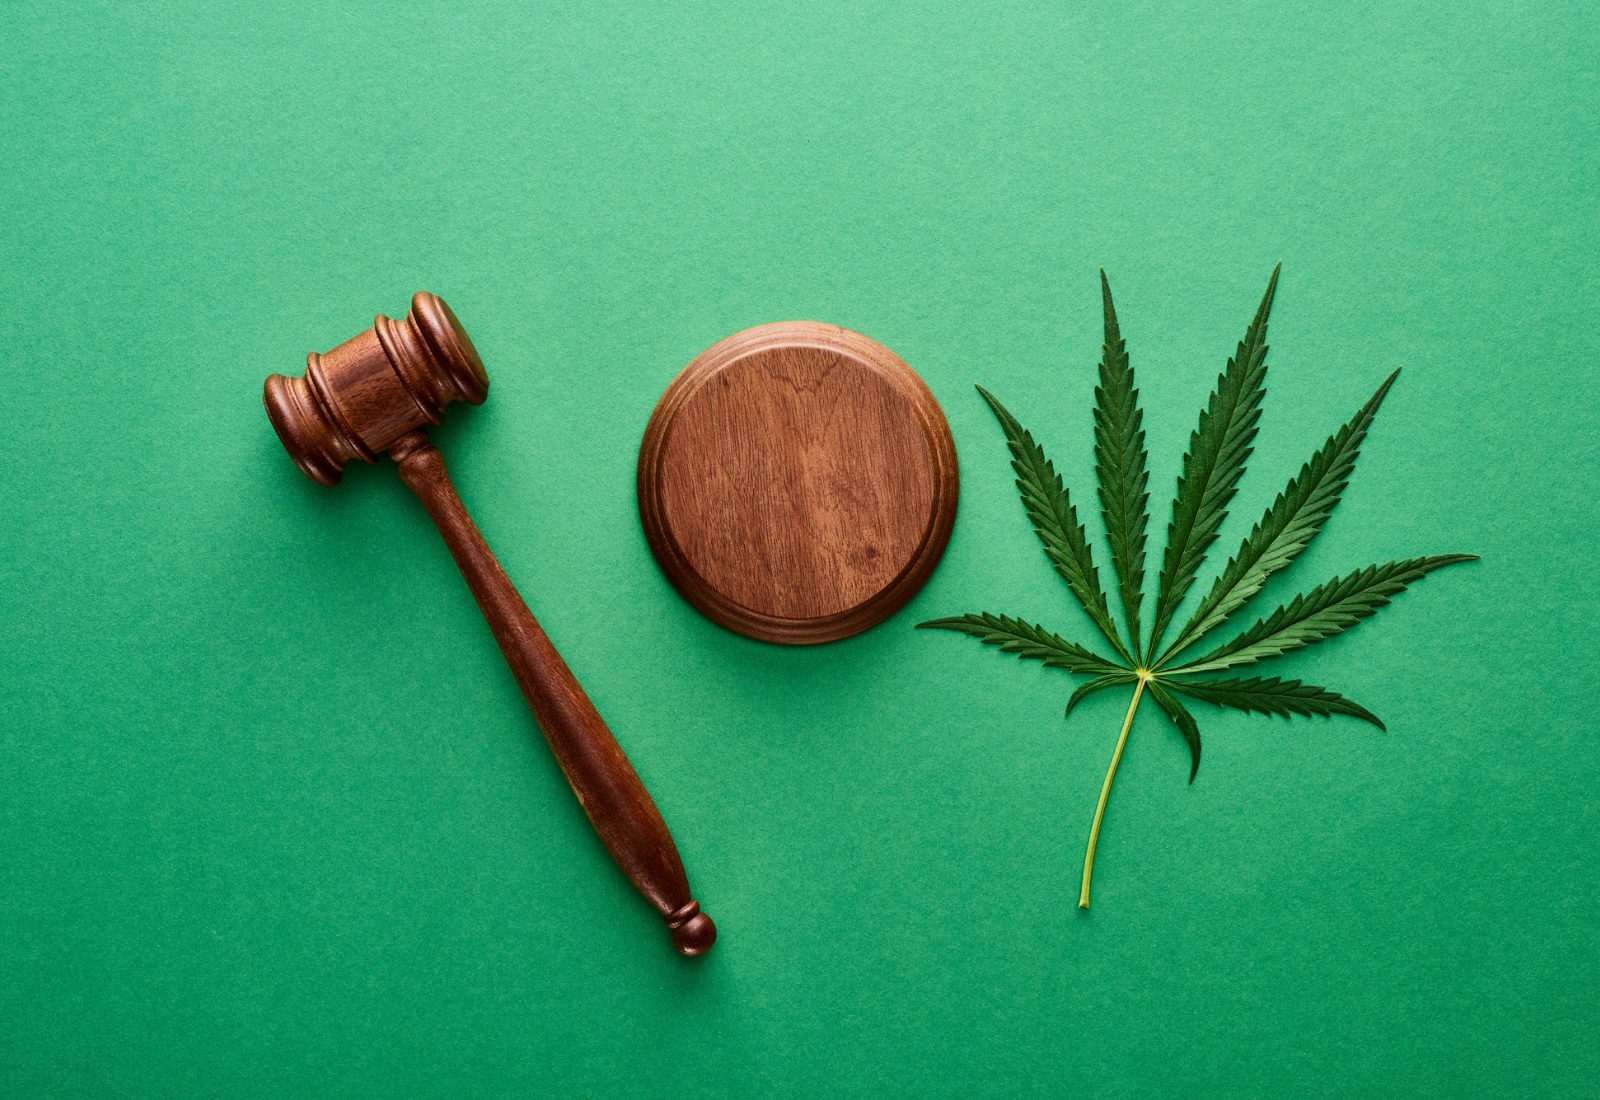 俄勒冈州的大麻诉讼 ODA